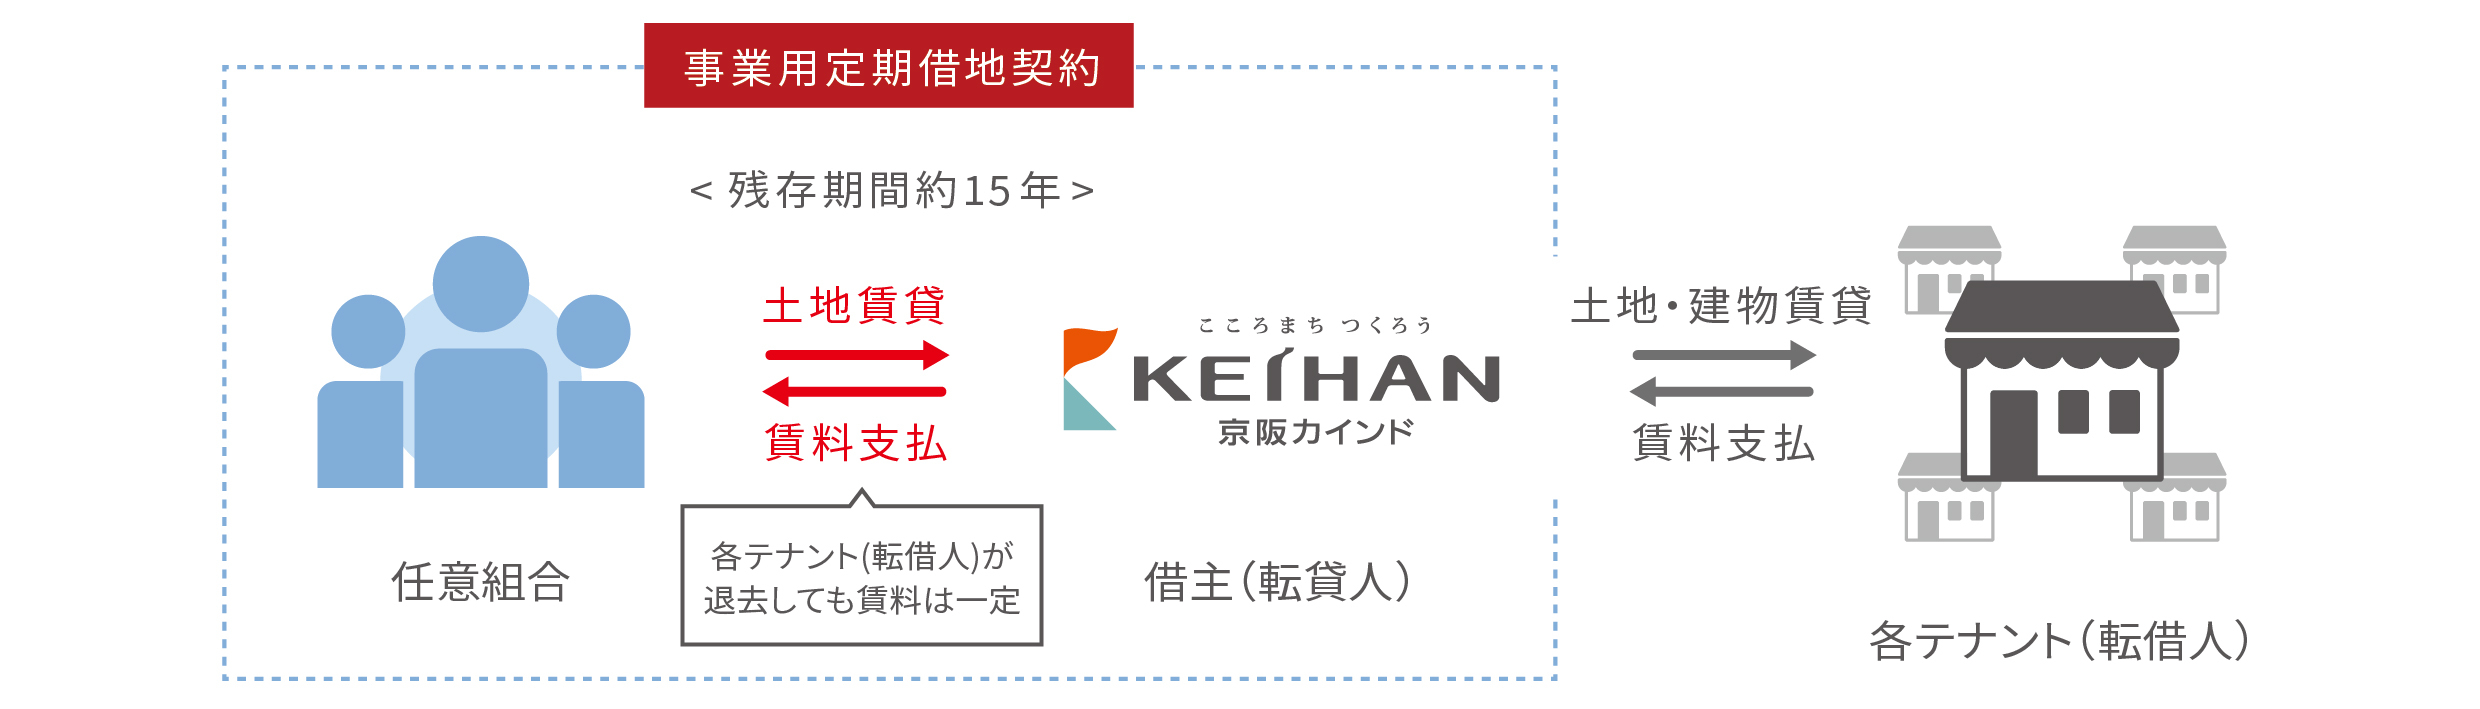 京阪の不動産小口化商品第2弾「KIT松井山手Ｉ」
2022年11月4日（金）より一般募集開始